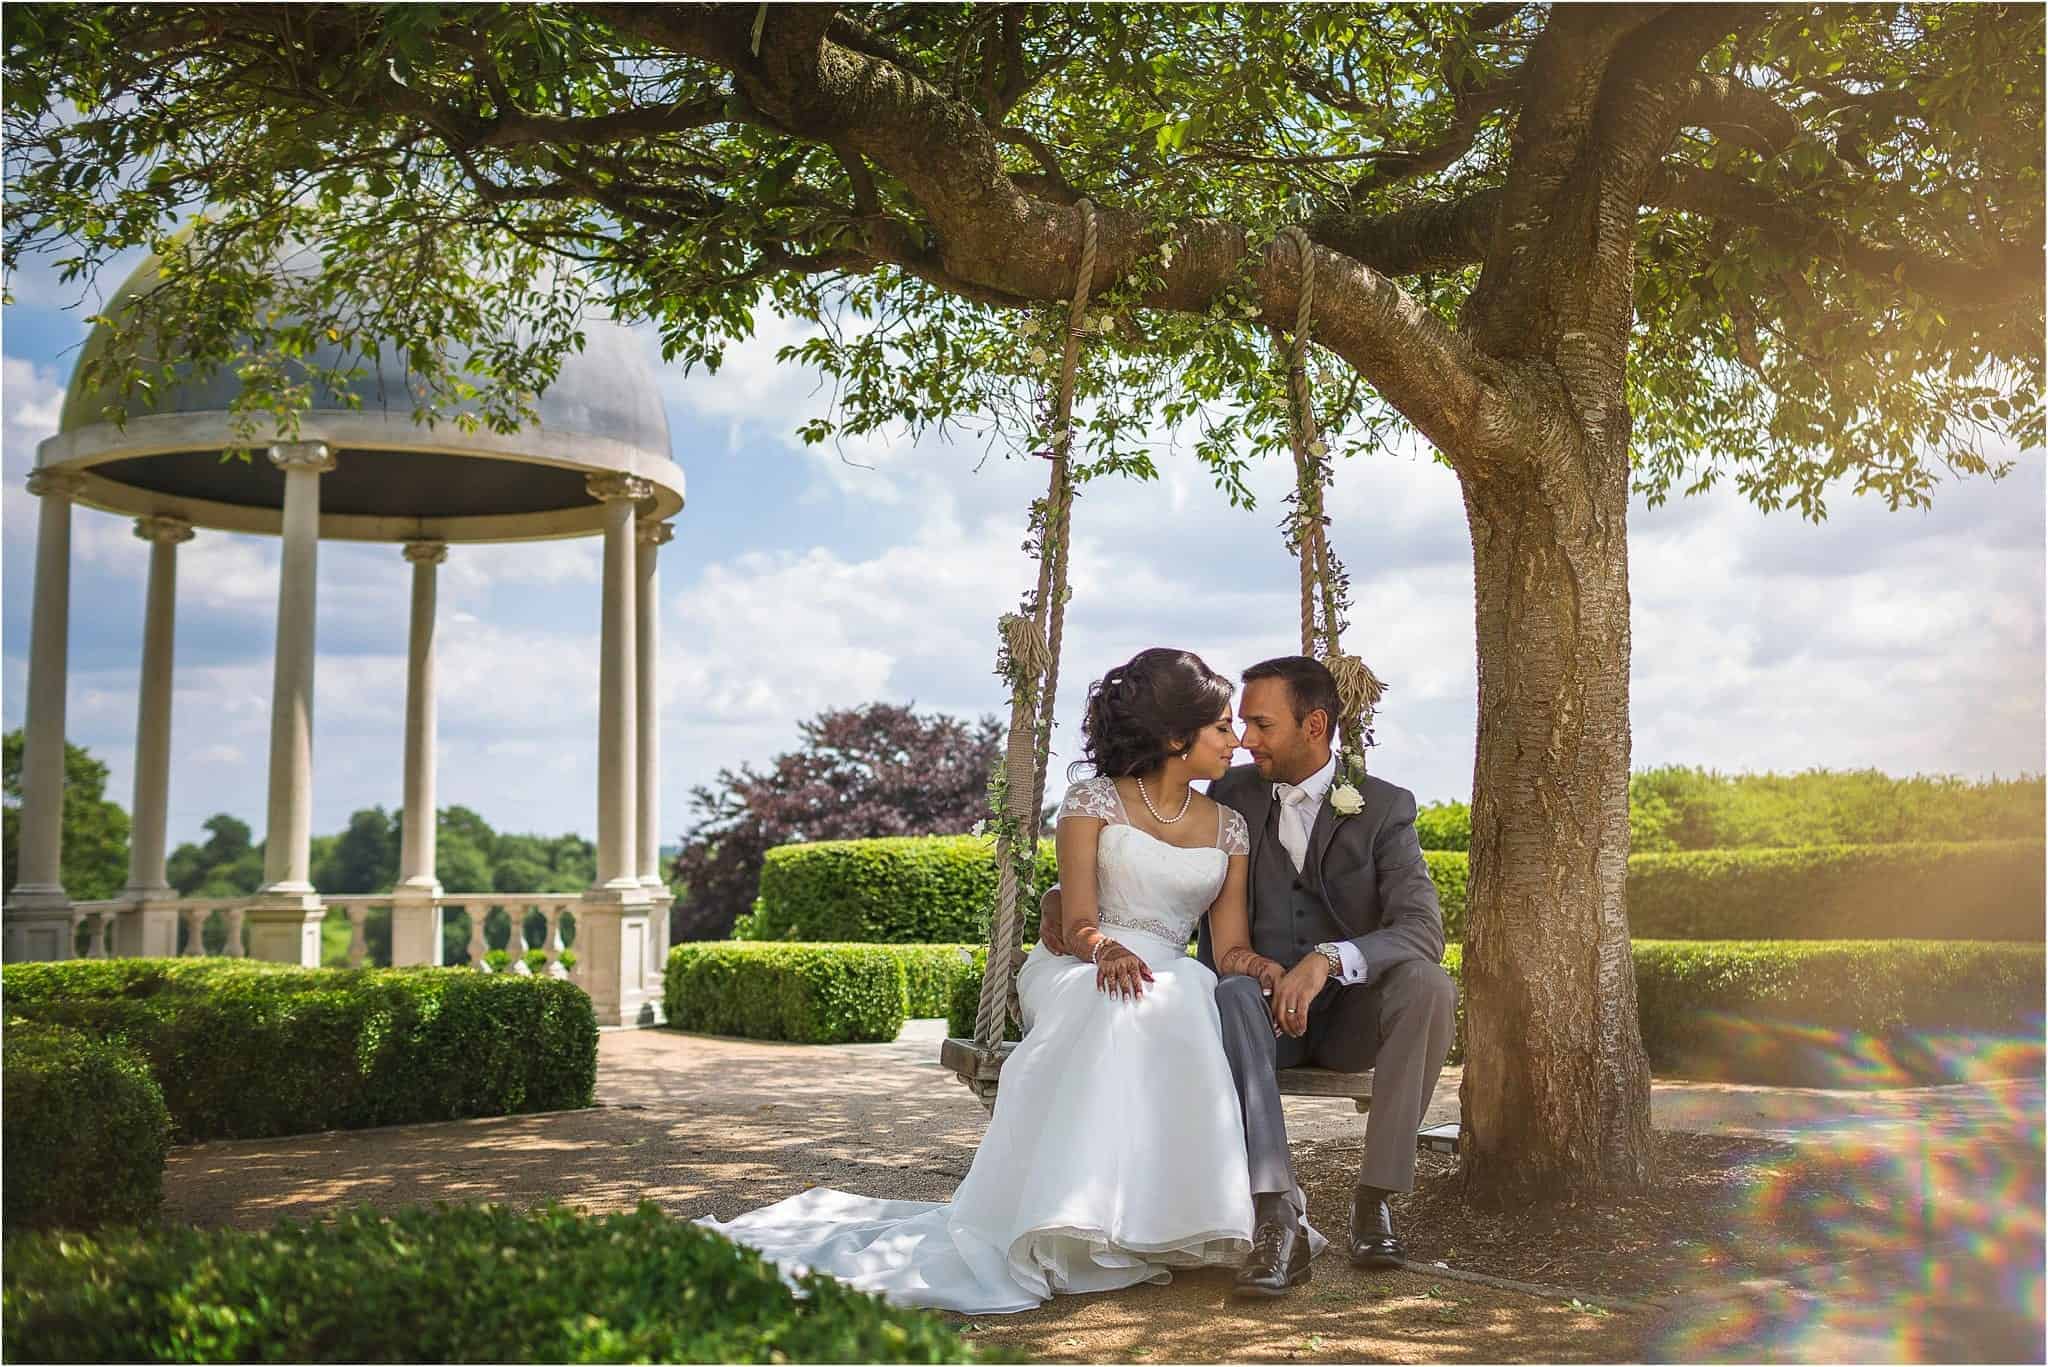 Froyle Park Wedding, Hampshire – Riddhi & Anish